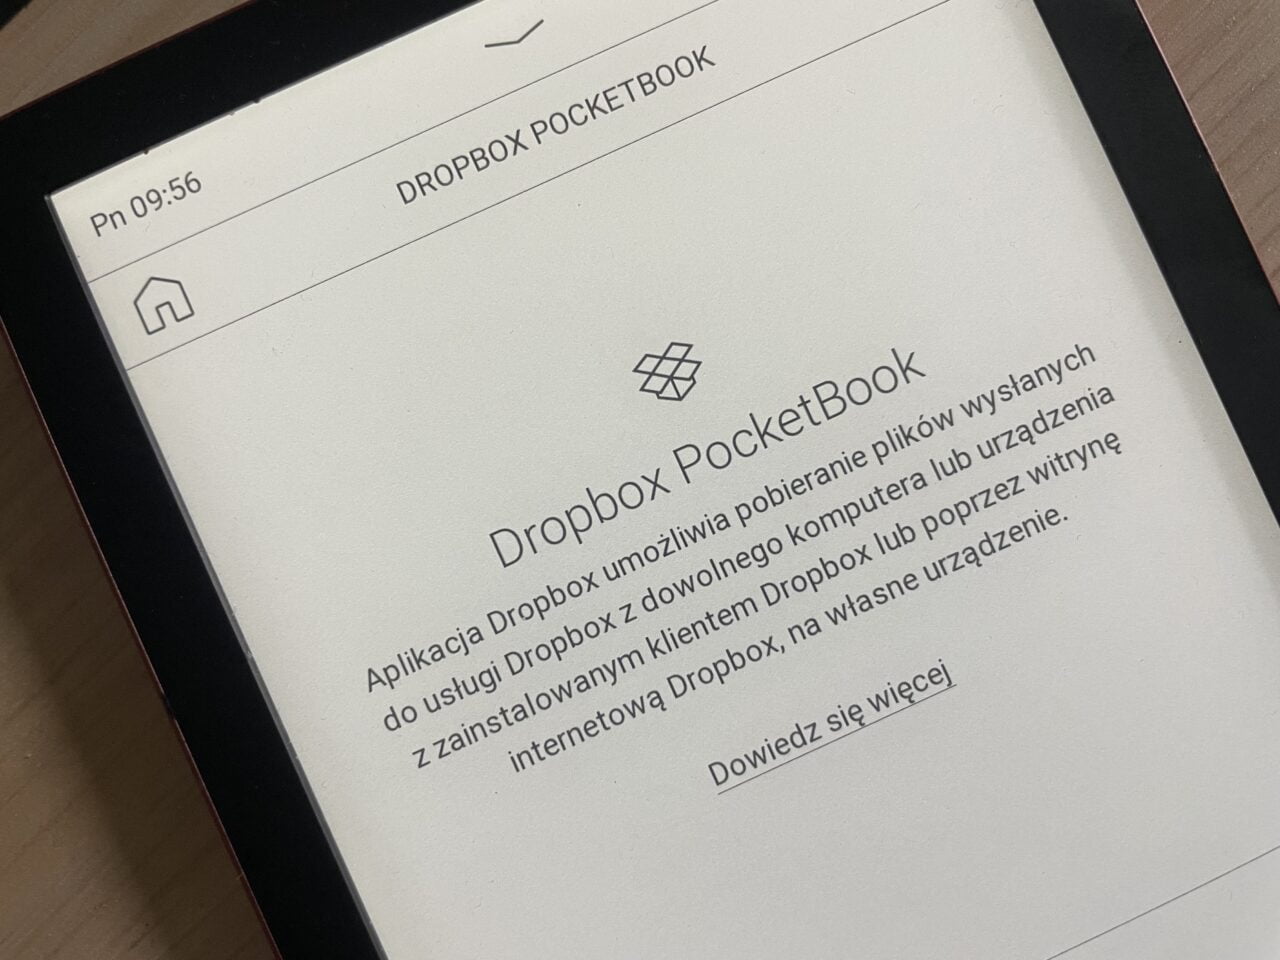 czytniki e-booków recenzja pocketbook verse pro dropbox